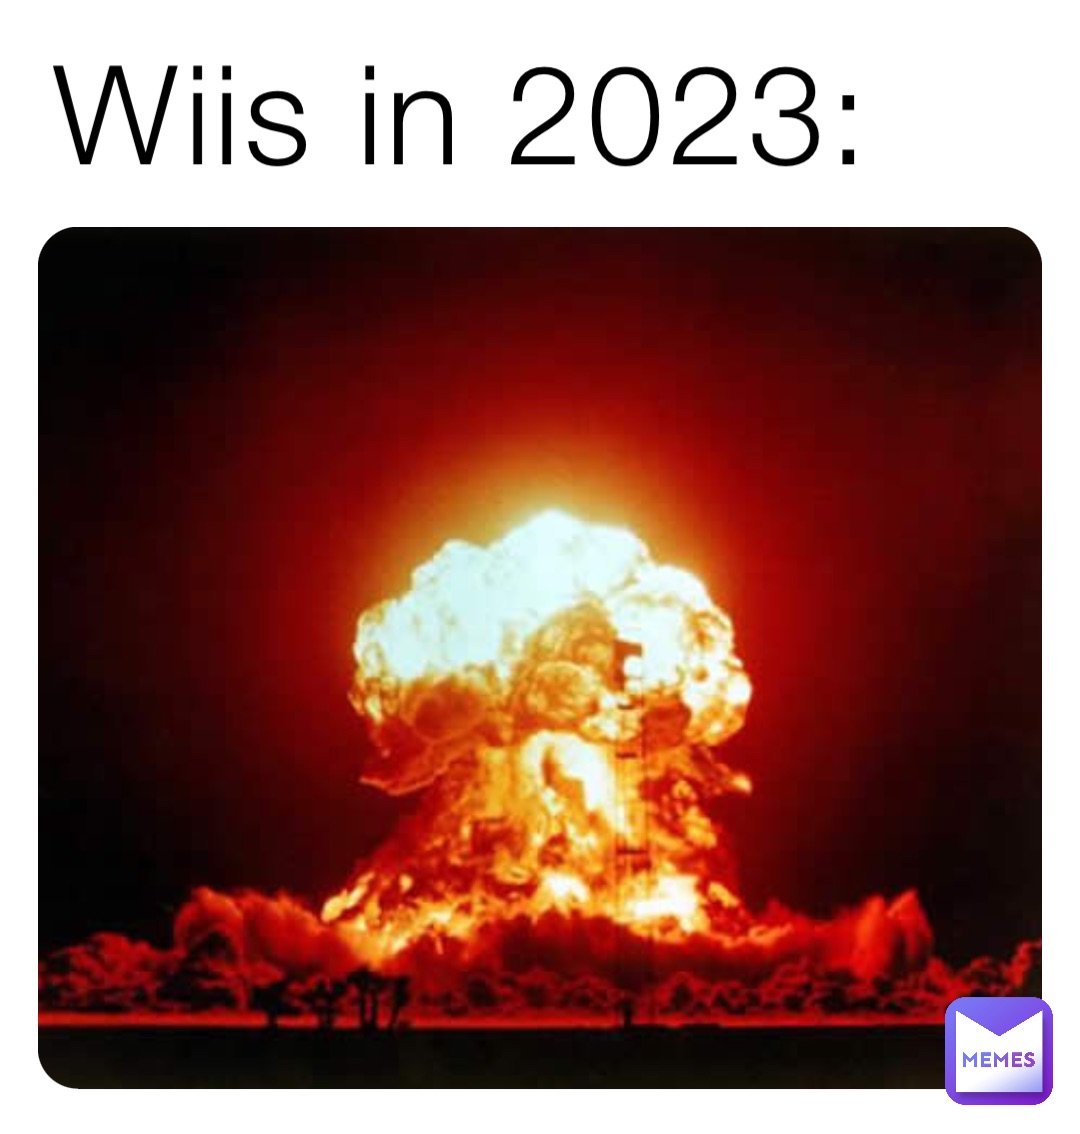 Wiis in 2023: